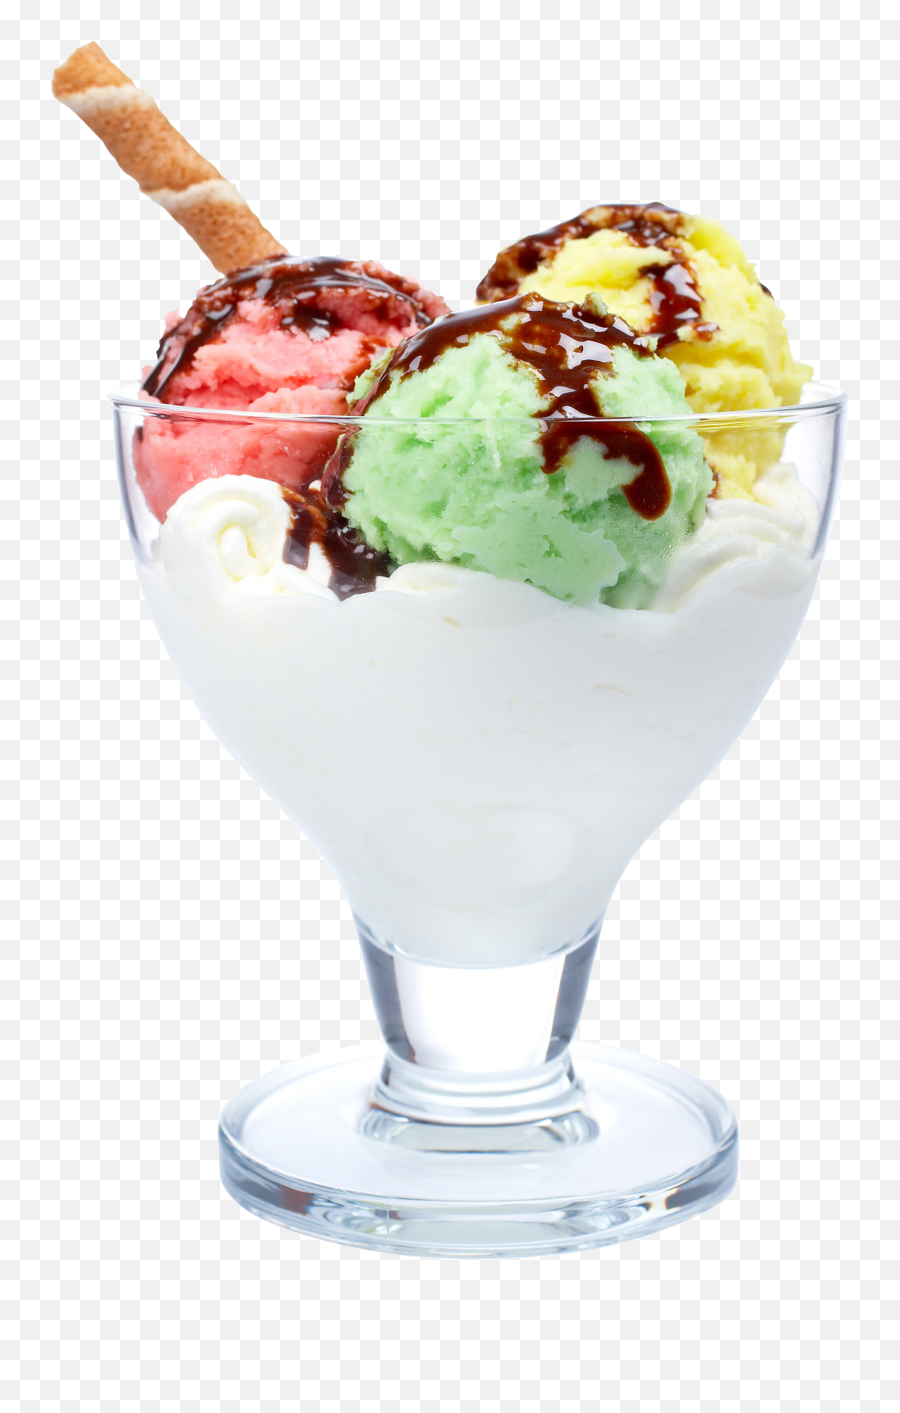 Png Transparent Ice Cream - Ice Cream Picture Download,Ice Cream Scoop Png